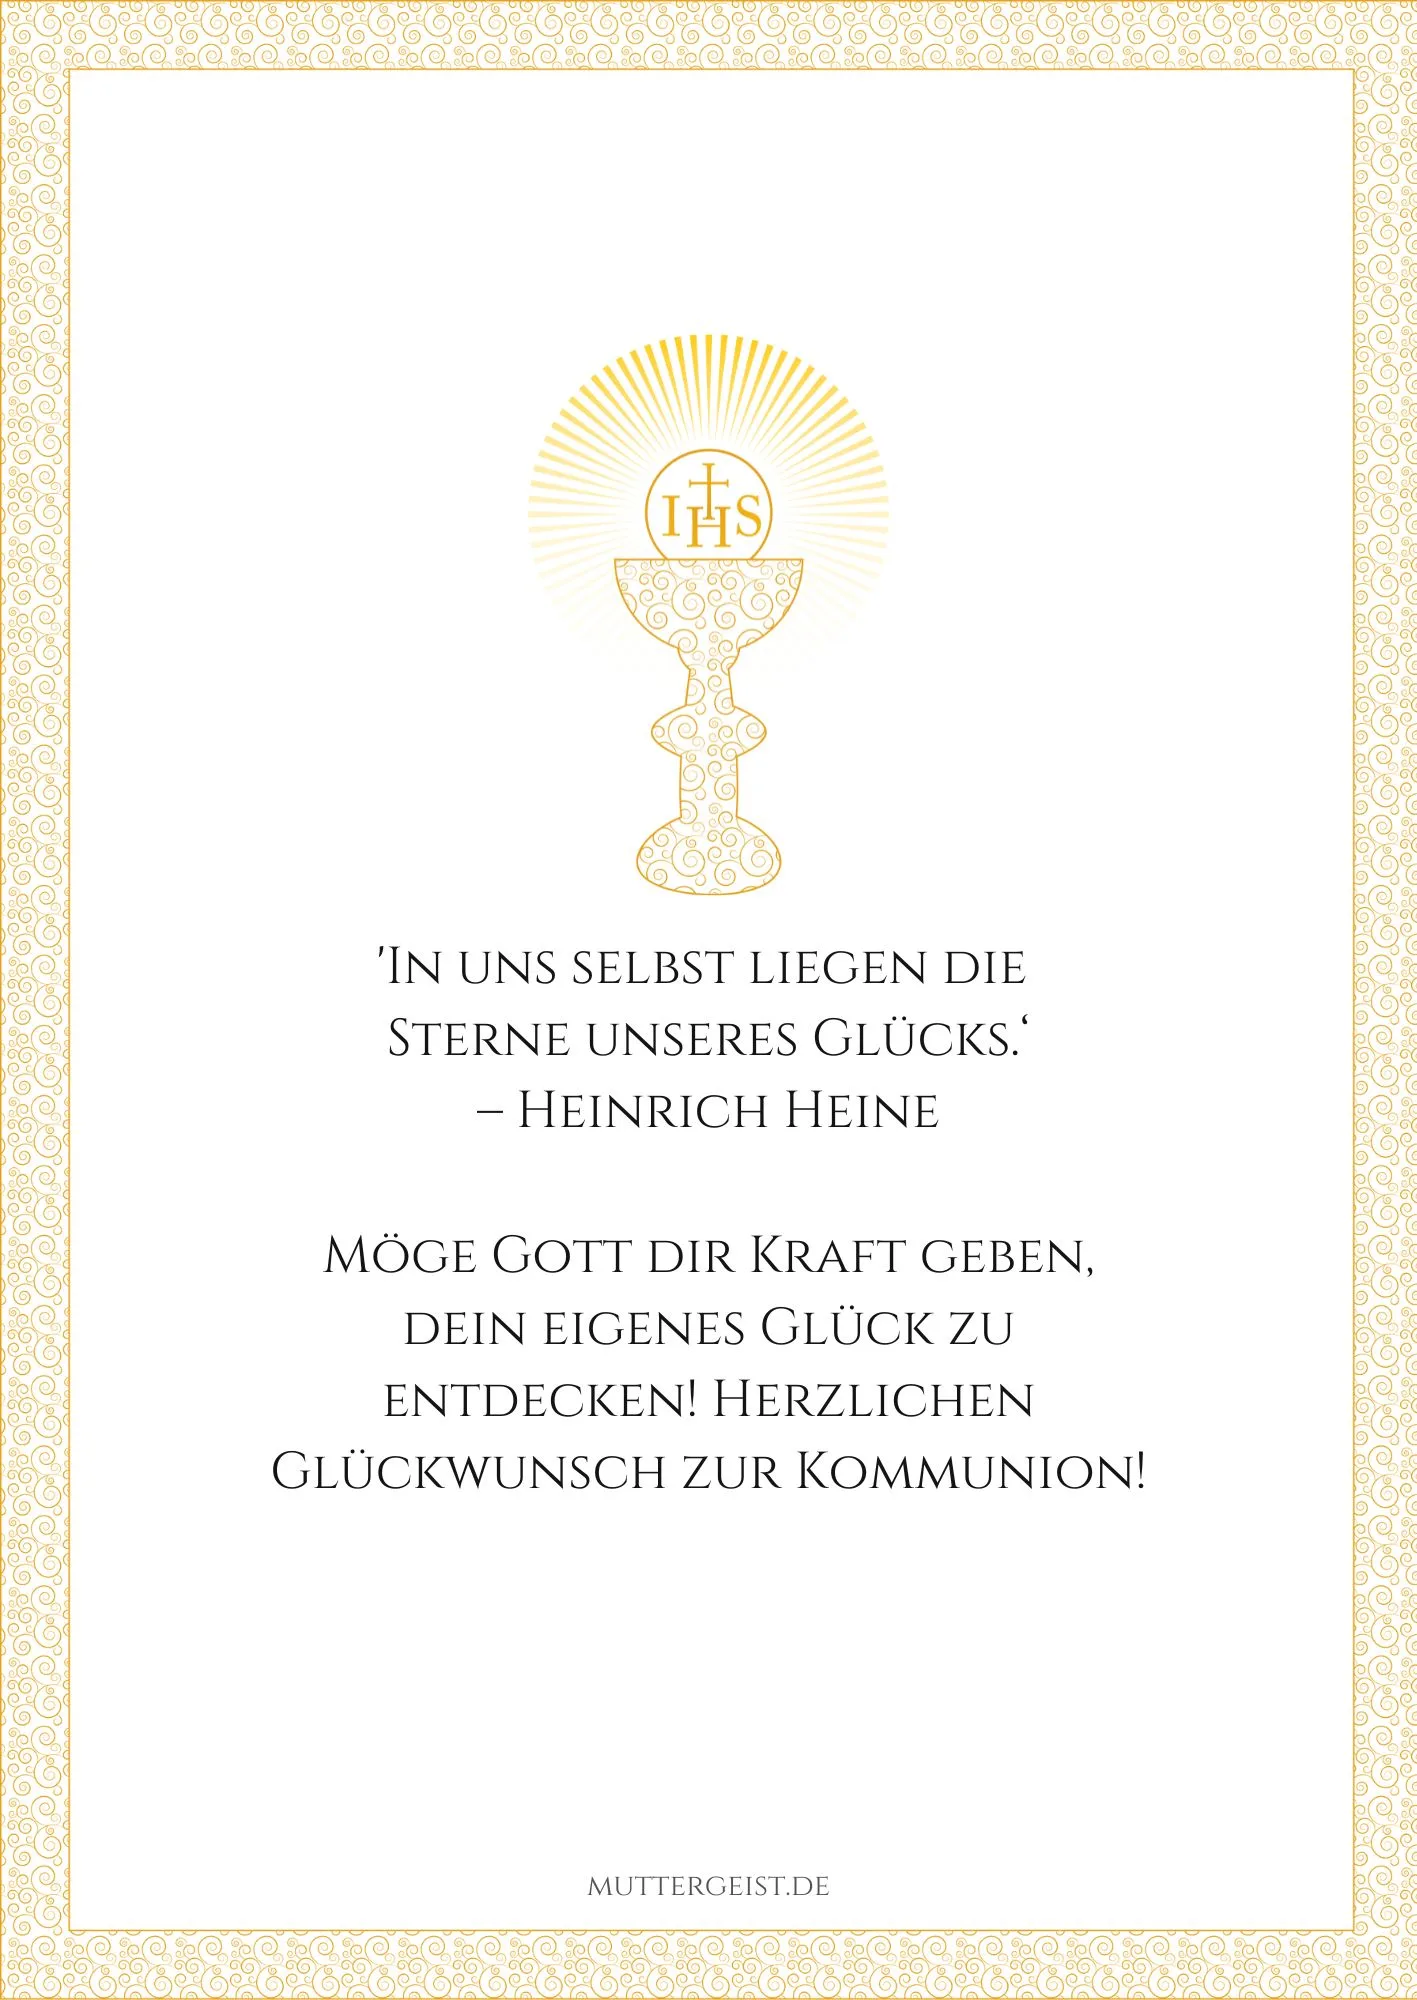 Druckbares Zitat von Heinrich Heine zur Erstkommunion